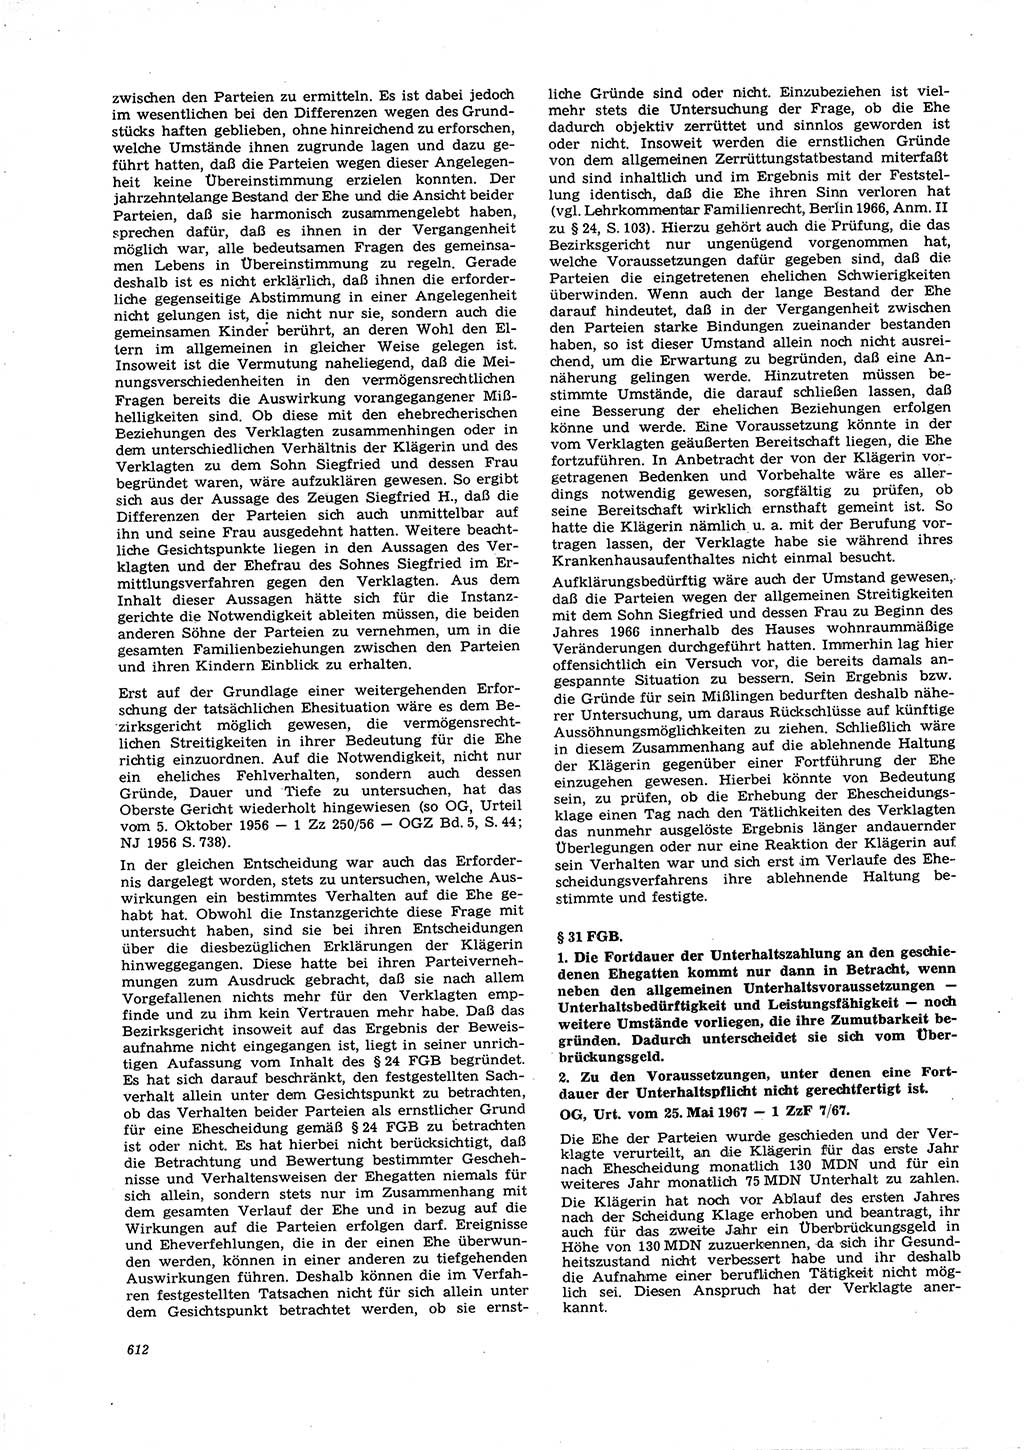 Neue Justiz (NJ), Zeitschrift für Recht und Rechtswissenschaft [Deutsche Demokratische Republik (DDR)], 21. Jahrgang 1967, Seite 612 (NJ DDR 1967, S. 612)